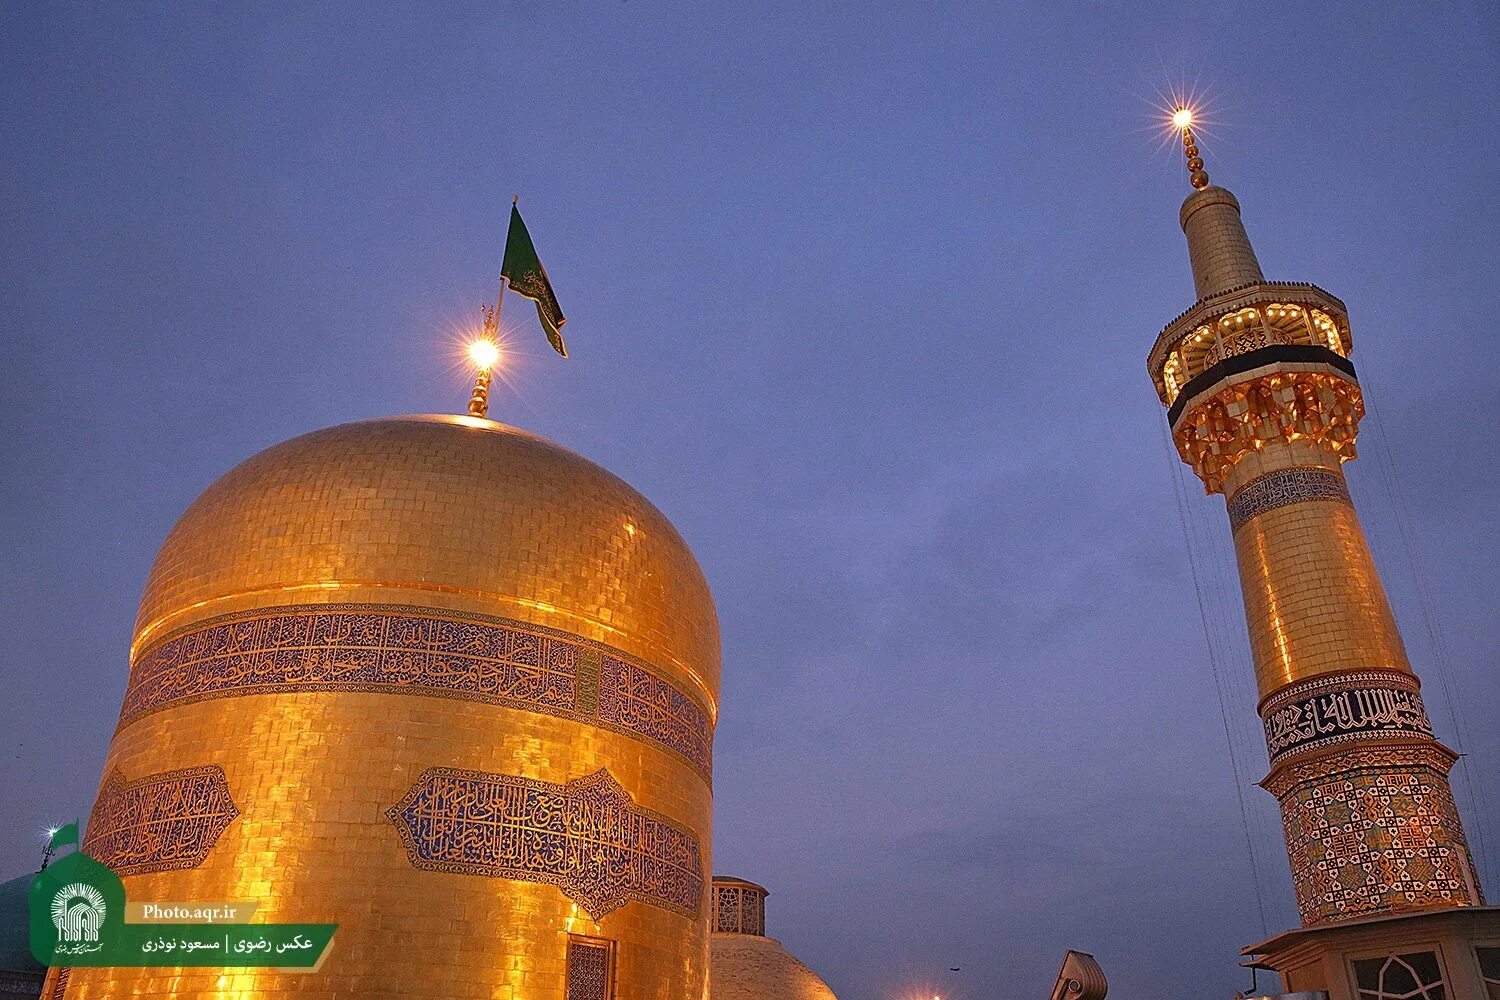 Имама реза. Imam Reza. Мешхед. Имам реза. Photo of Imam Reza Shrine in Mashhad.